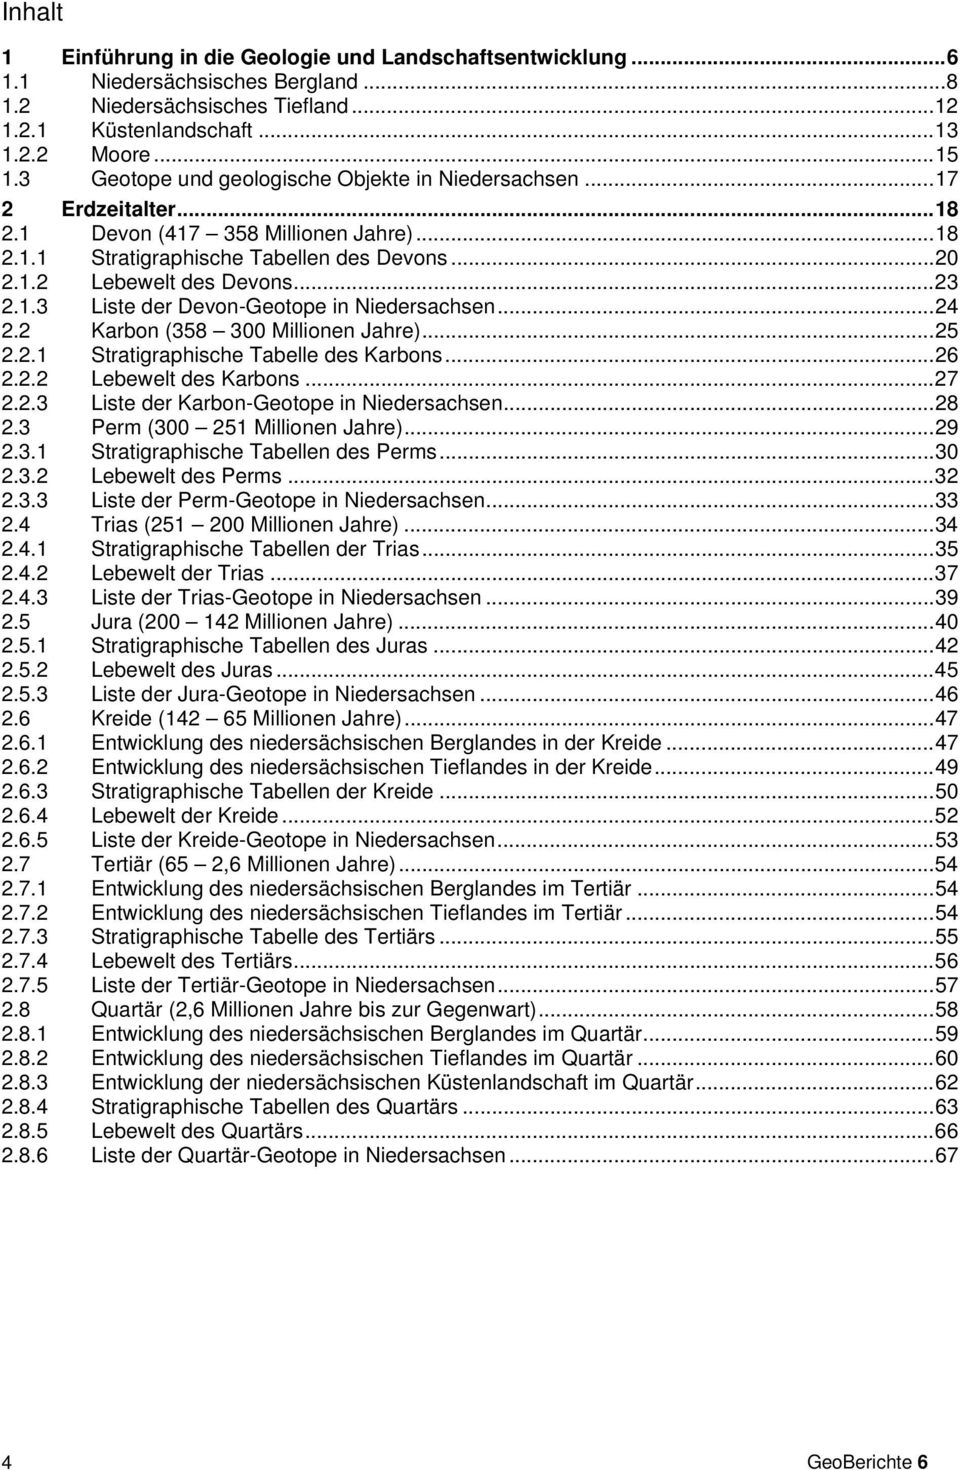 .. 23 2.1.3 Liste der Devon-Geotope in Niedersachsen... 24 2.2 Karbon (358 300 Millionen Jahre)... 25 2.2.1 Stratigraphische Tabelle des Karbons... 26 2.2.2 Lebewelt des Karbons... 27 2.2.3 Liste der Karbon-Geotope in Niedersachsen.